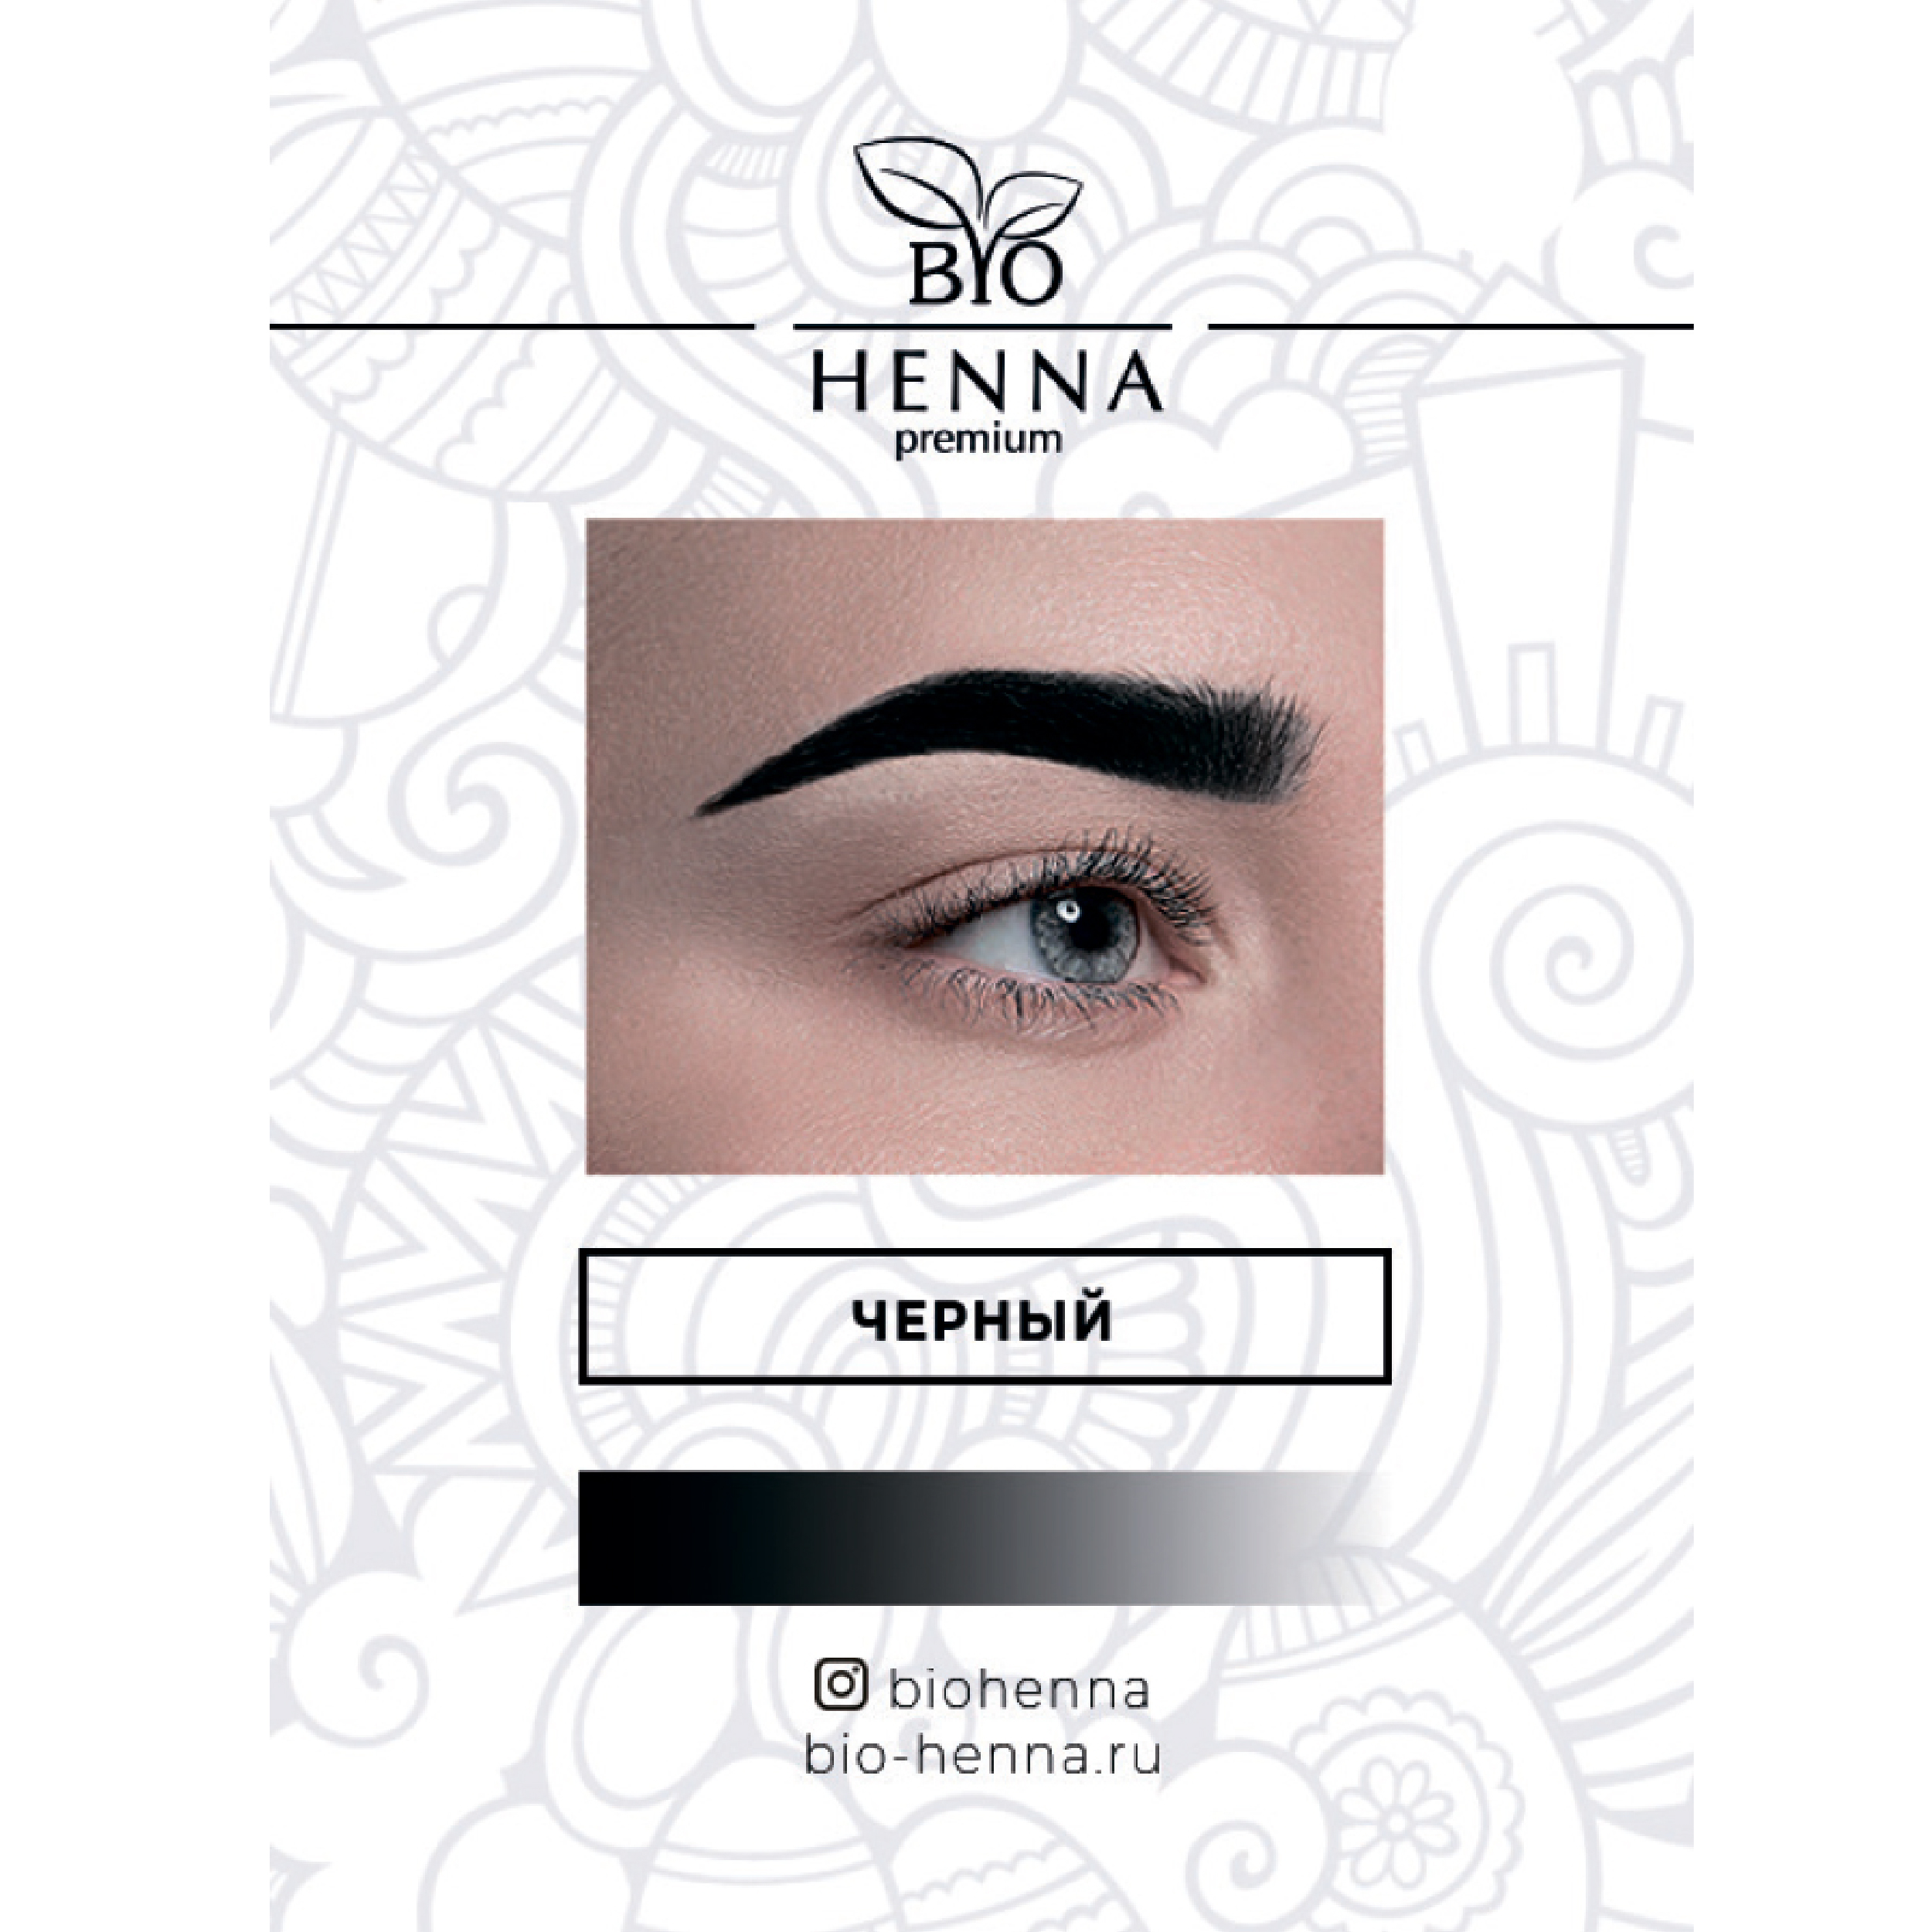 Хна Bio Henna в капсулах оттенок Черный, 1 шт, 0,2 гр